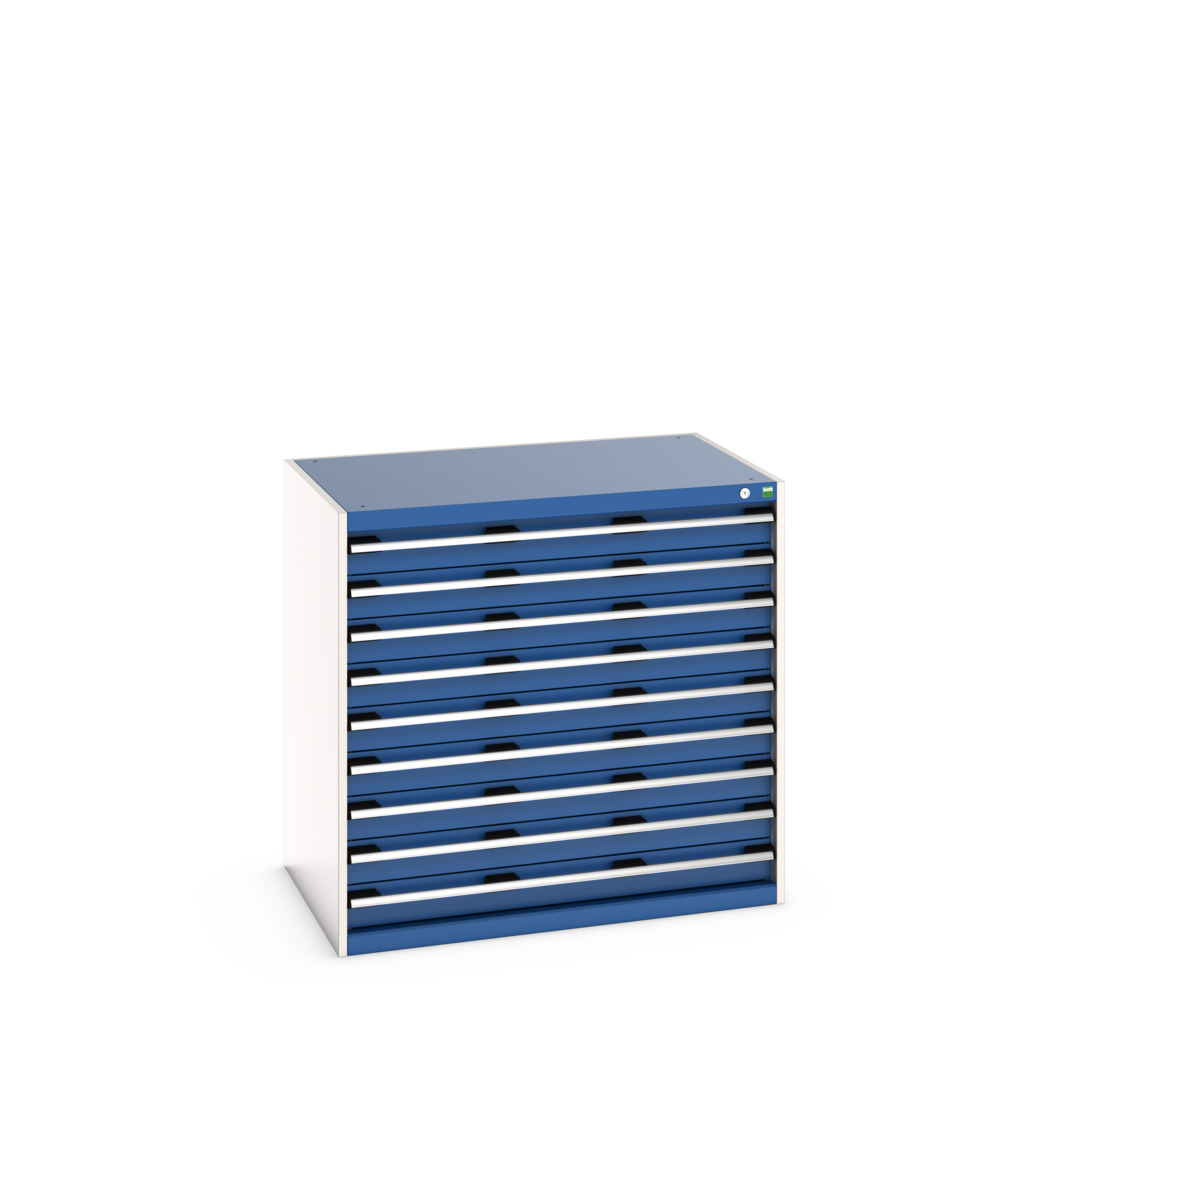 40029027.11V - cubio drawer cabinet